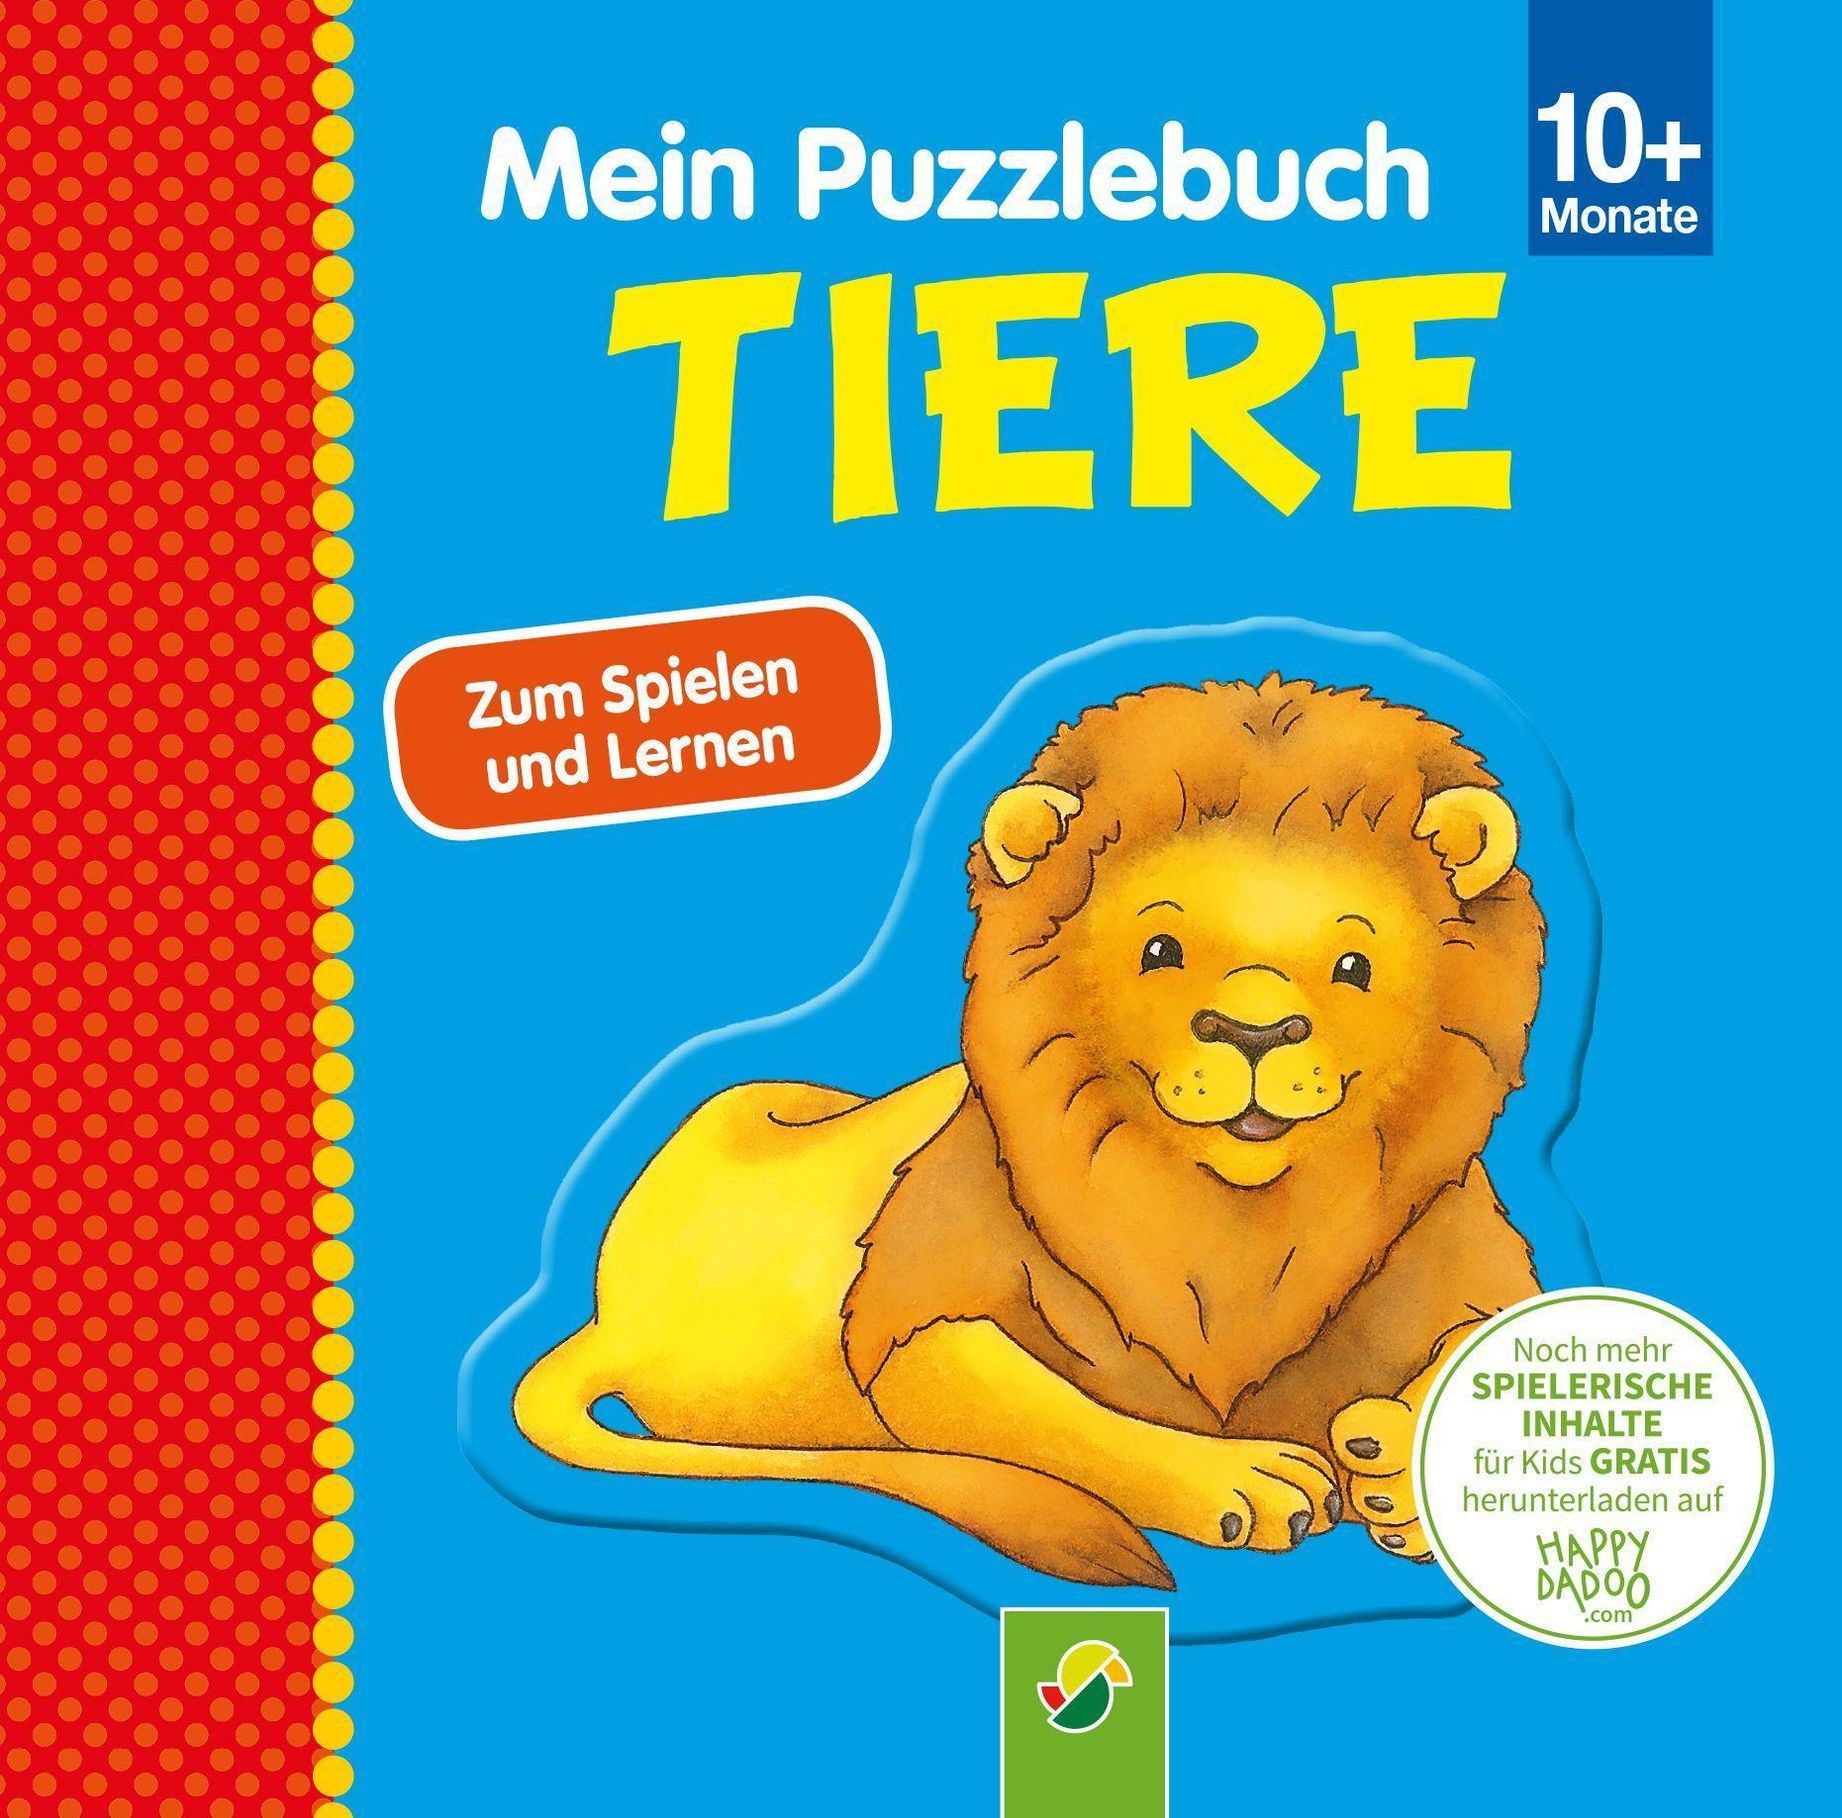 Mein Puzzlebuch Tiere für Kinder ab 10 Monaten kaufen